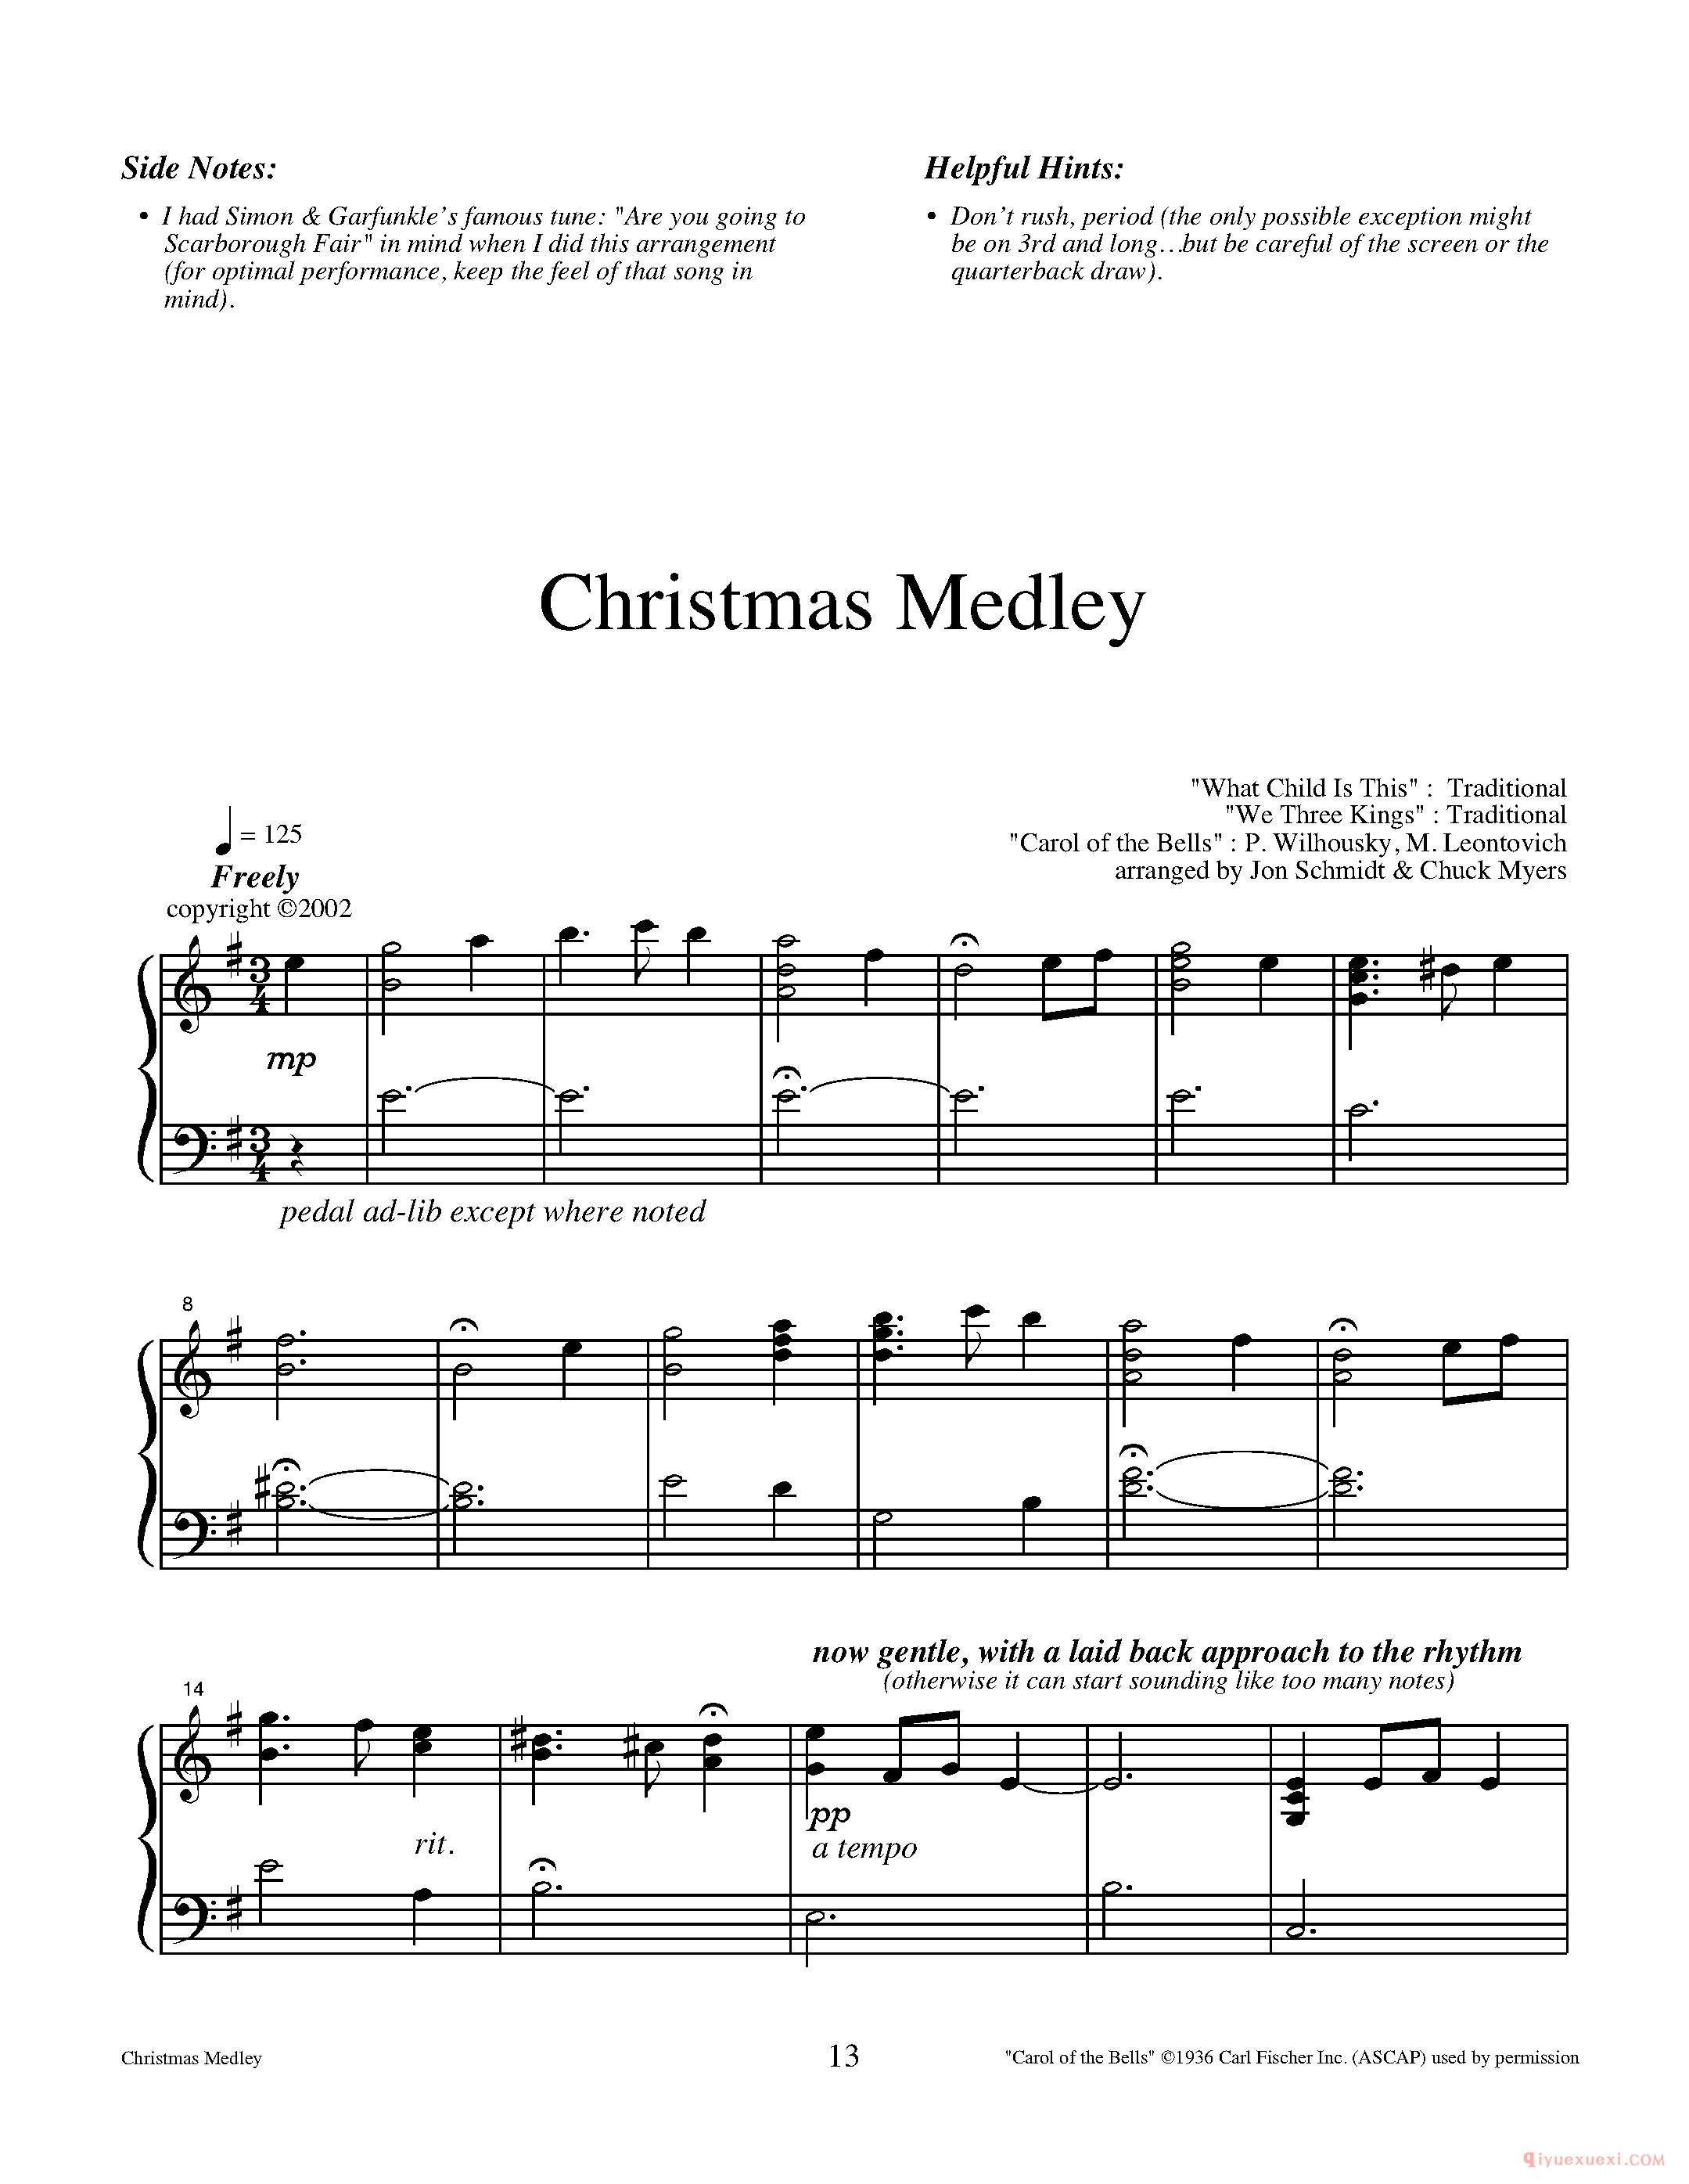 钢琴独奏曲《Christmas Medley》Jon Schmidt